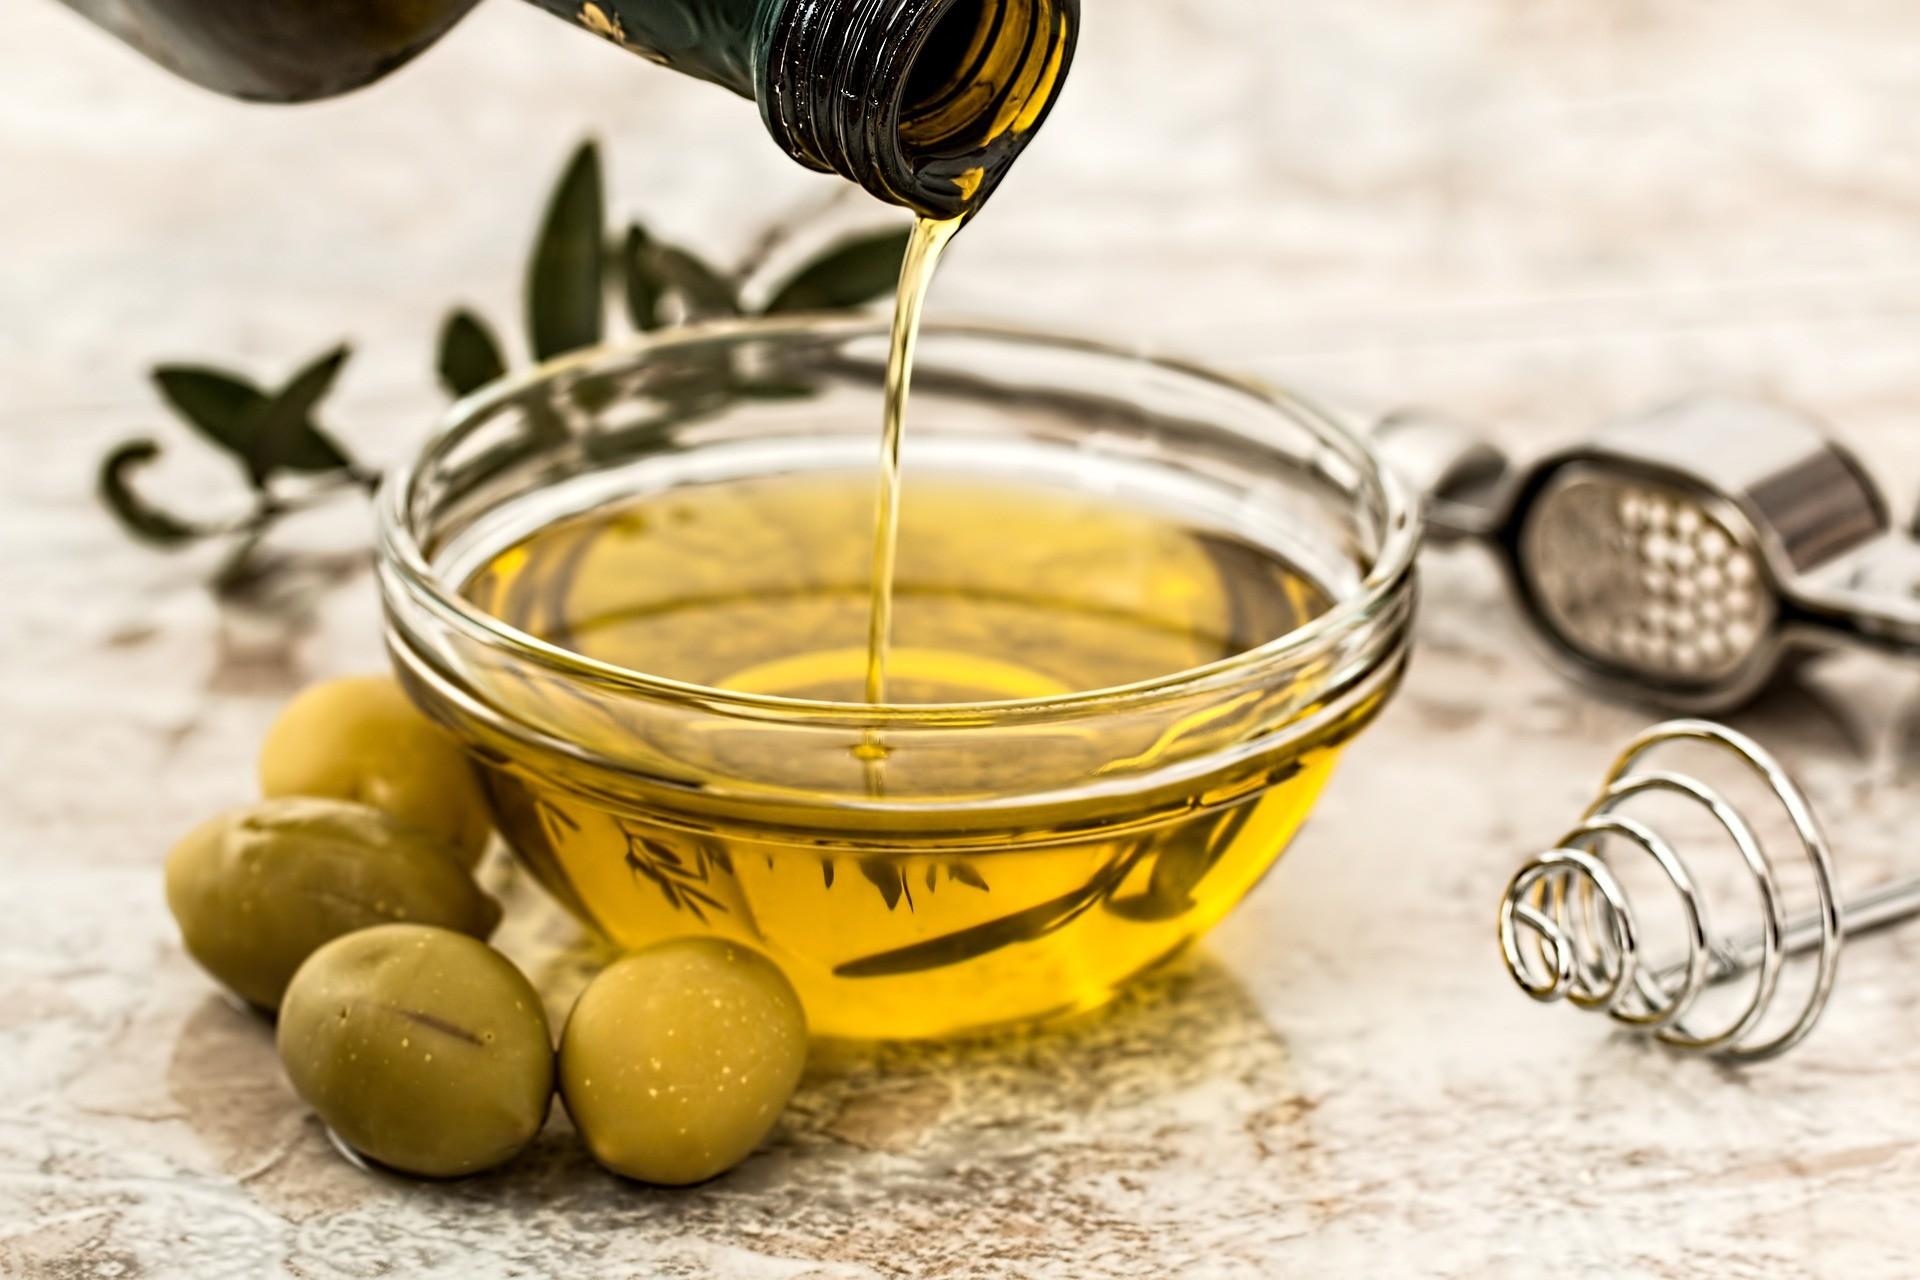 Schale mit Olivenöl und Oliven